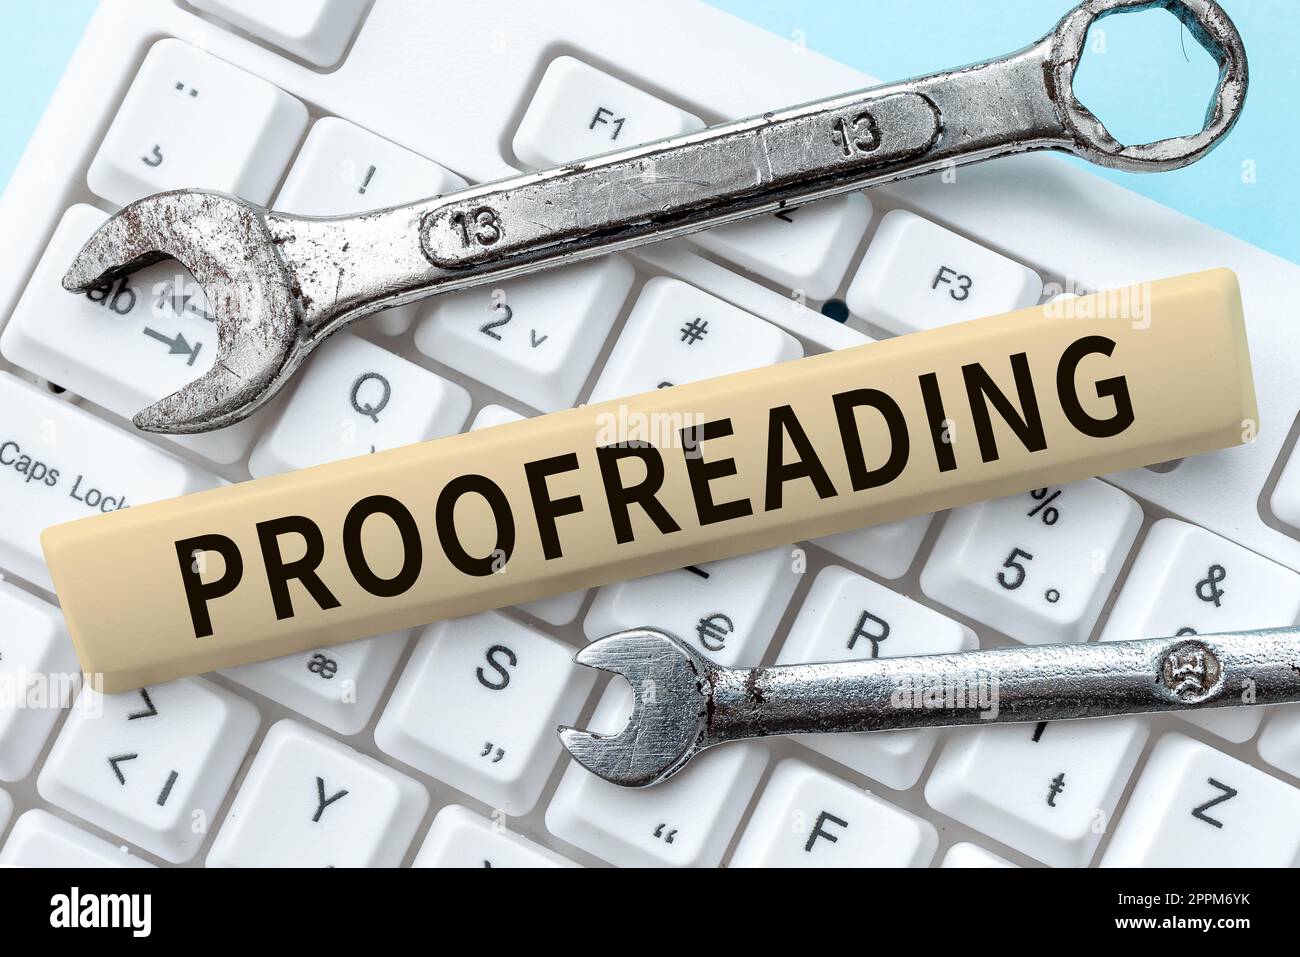 Konzeptionelle Beschriftung Proofreading. Geschäftsüberblick über das Lesen und Markieren von Rechtschreibfehlern, Grammatik- und Syntaxfehlern Stockfoto